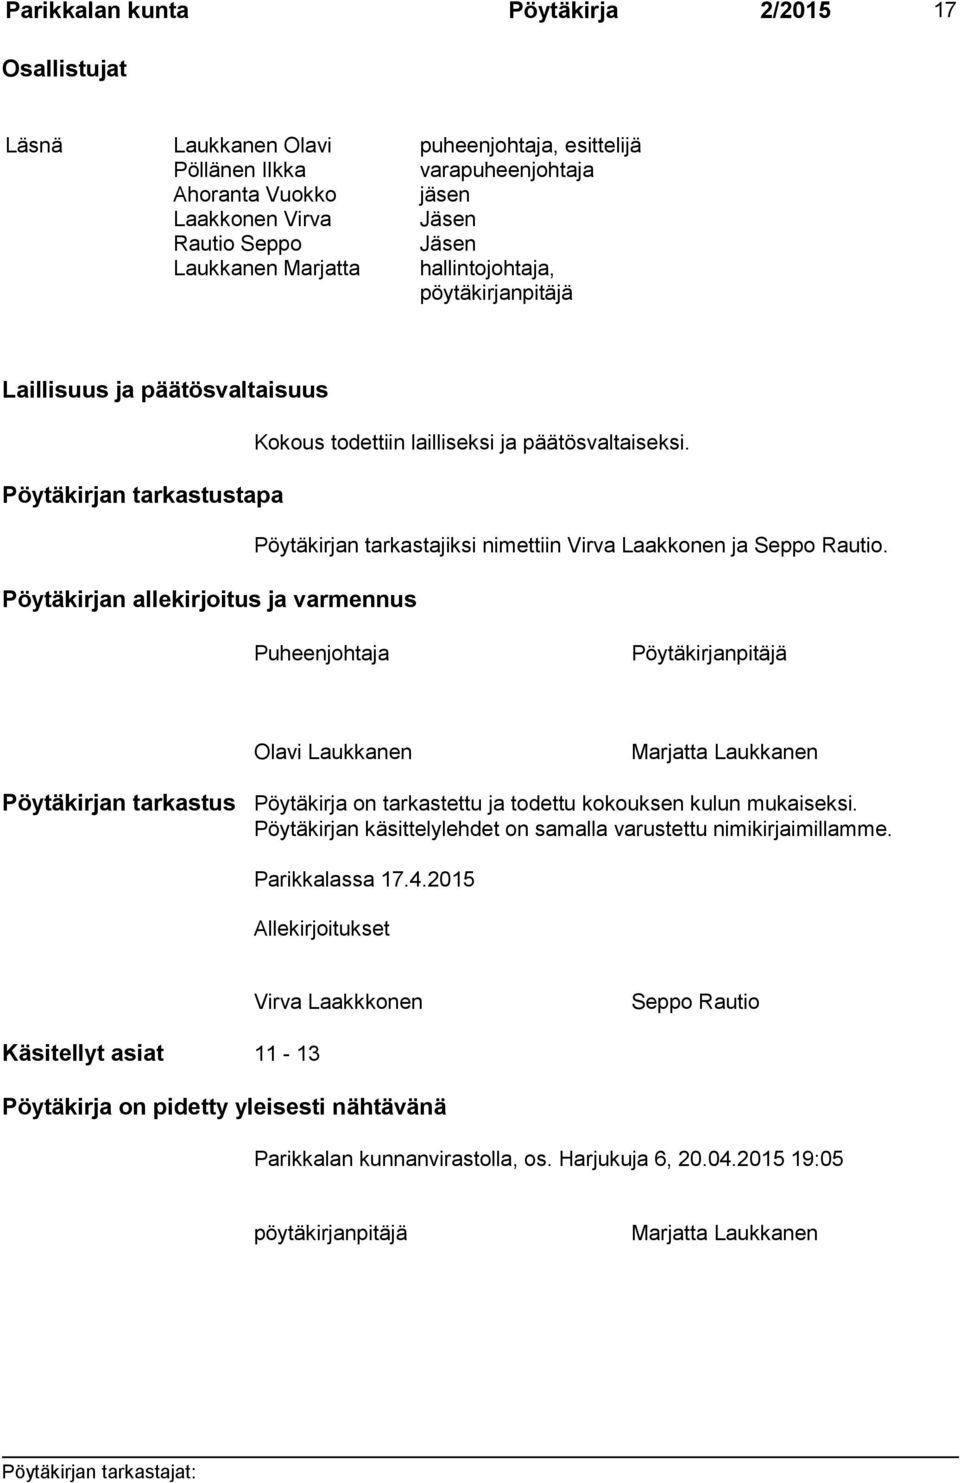 Pöytäkirjan tarkastustapa Pöytäkirjan tarkastajiksi nimettiin Virva Laakkonen ja Seppo Rautio.